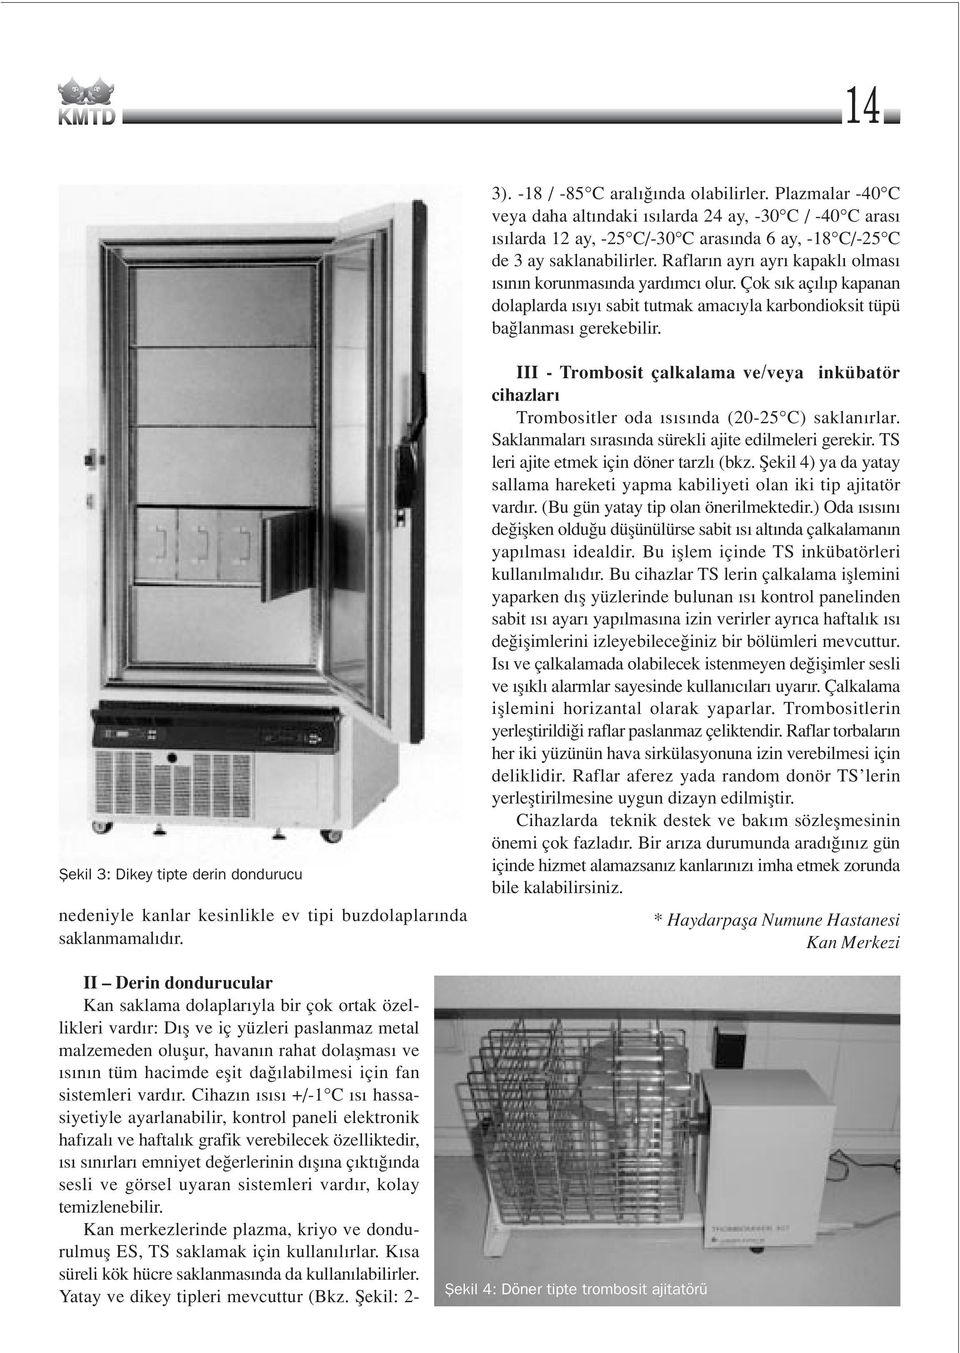 fiekil 3: Dikey tipte derin dondurucu nedeniyle kanlar kesinlikle ev tipi buzdolaplar nda saklanmamal d r.